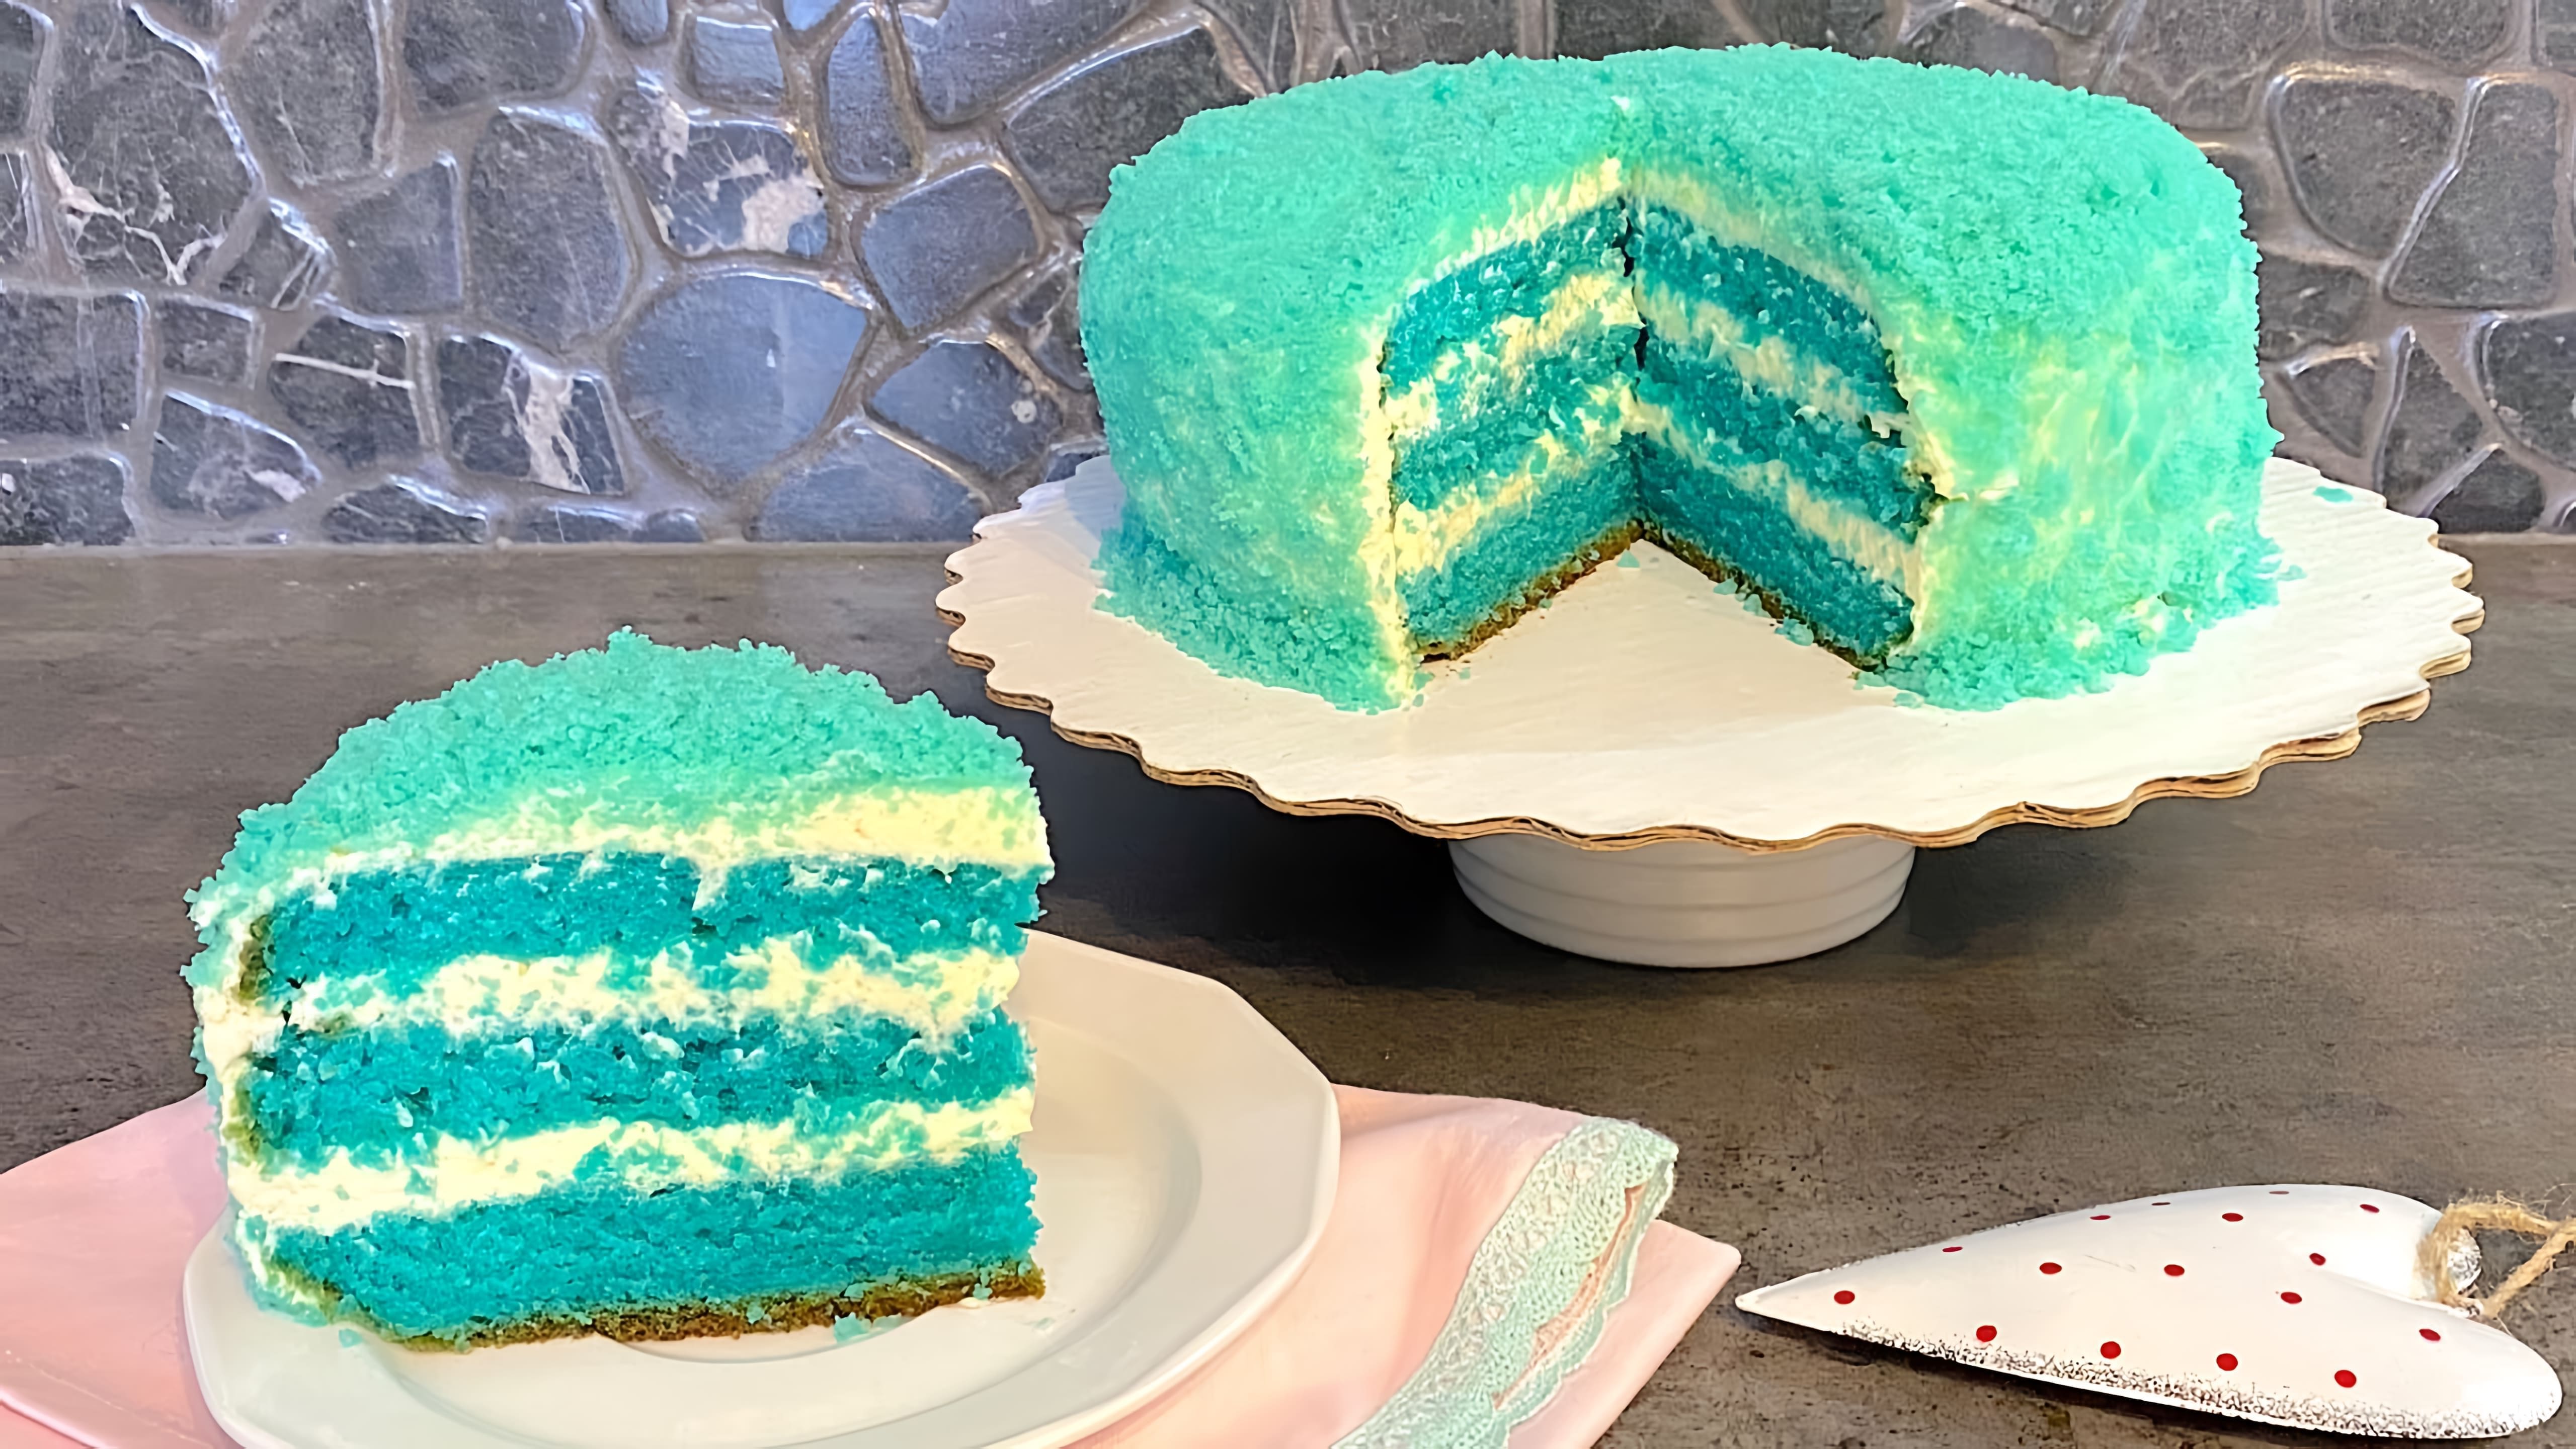 В этом видео-ролике вы увидите, как приготовить яркий и необычный торт "Синий бархат" для праздничного стола